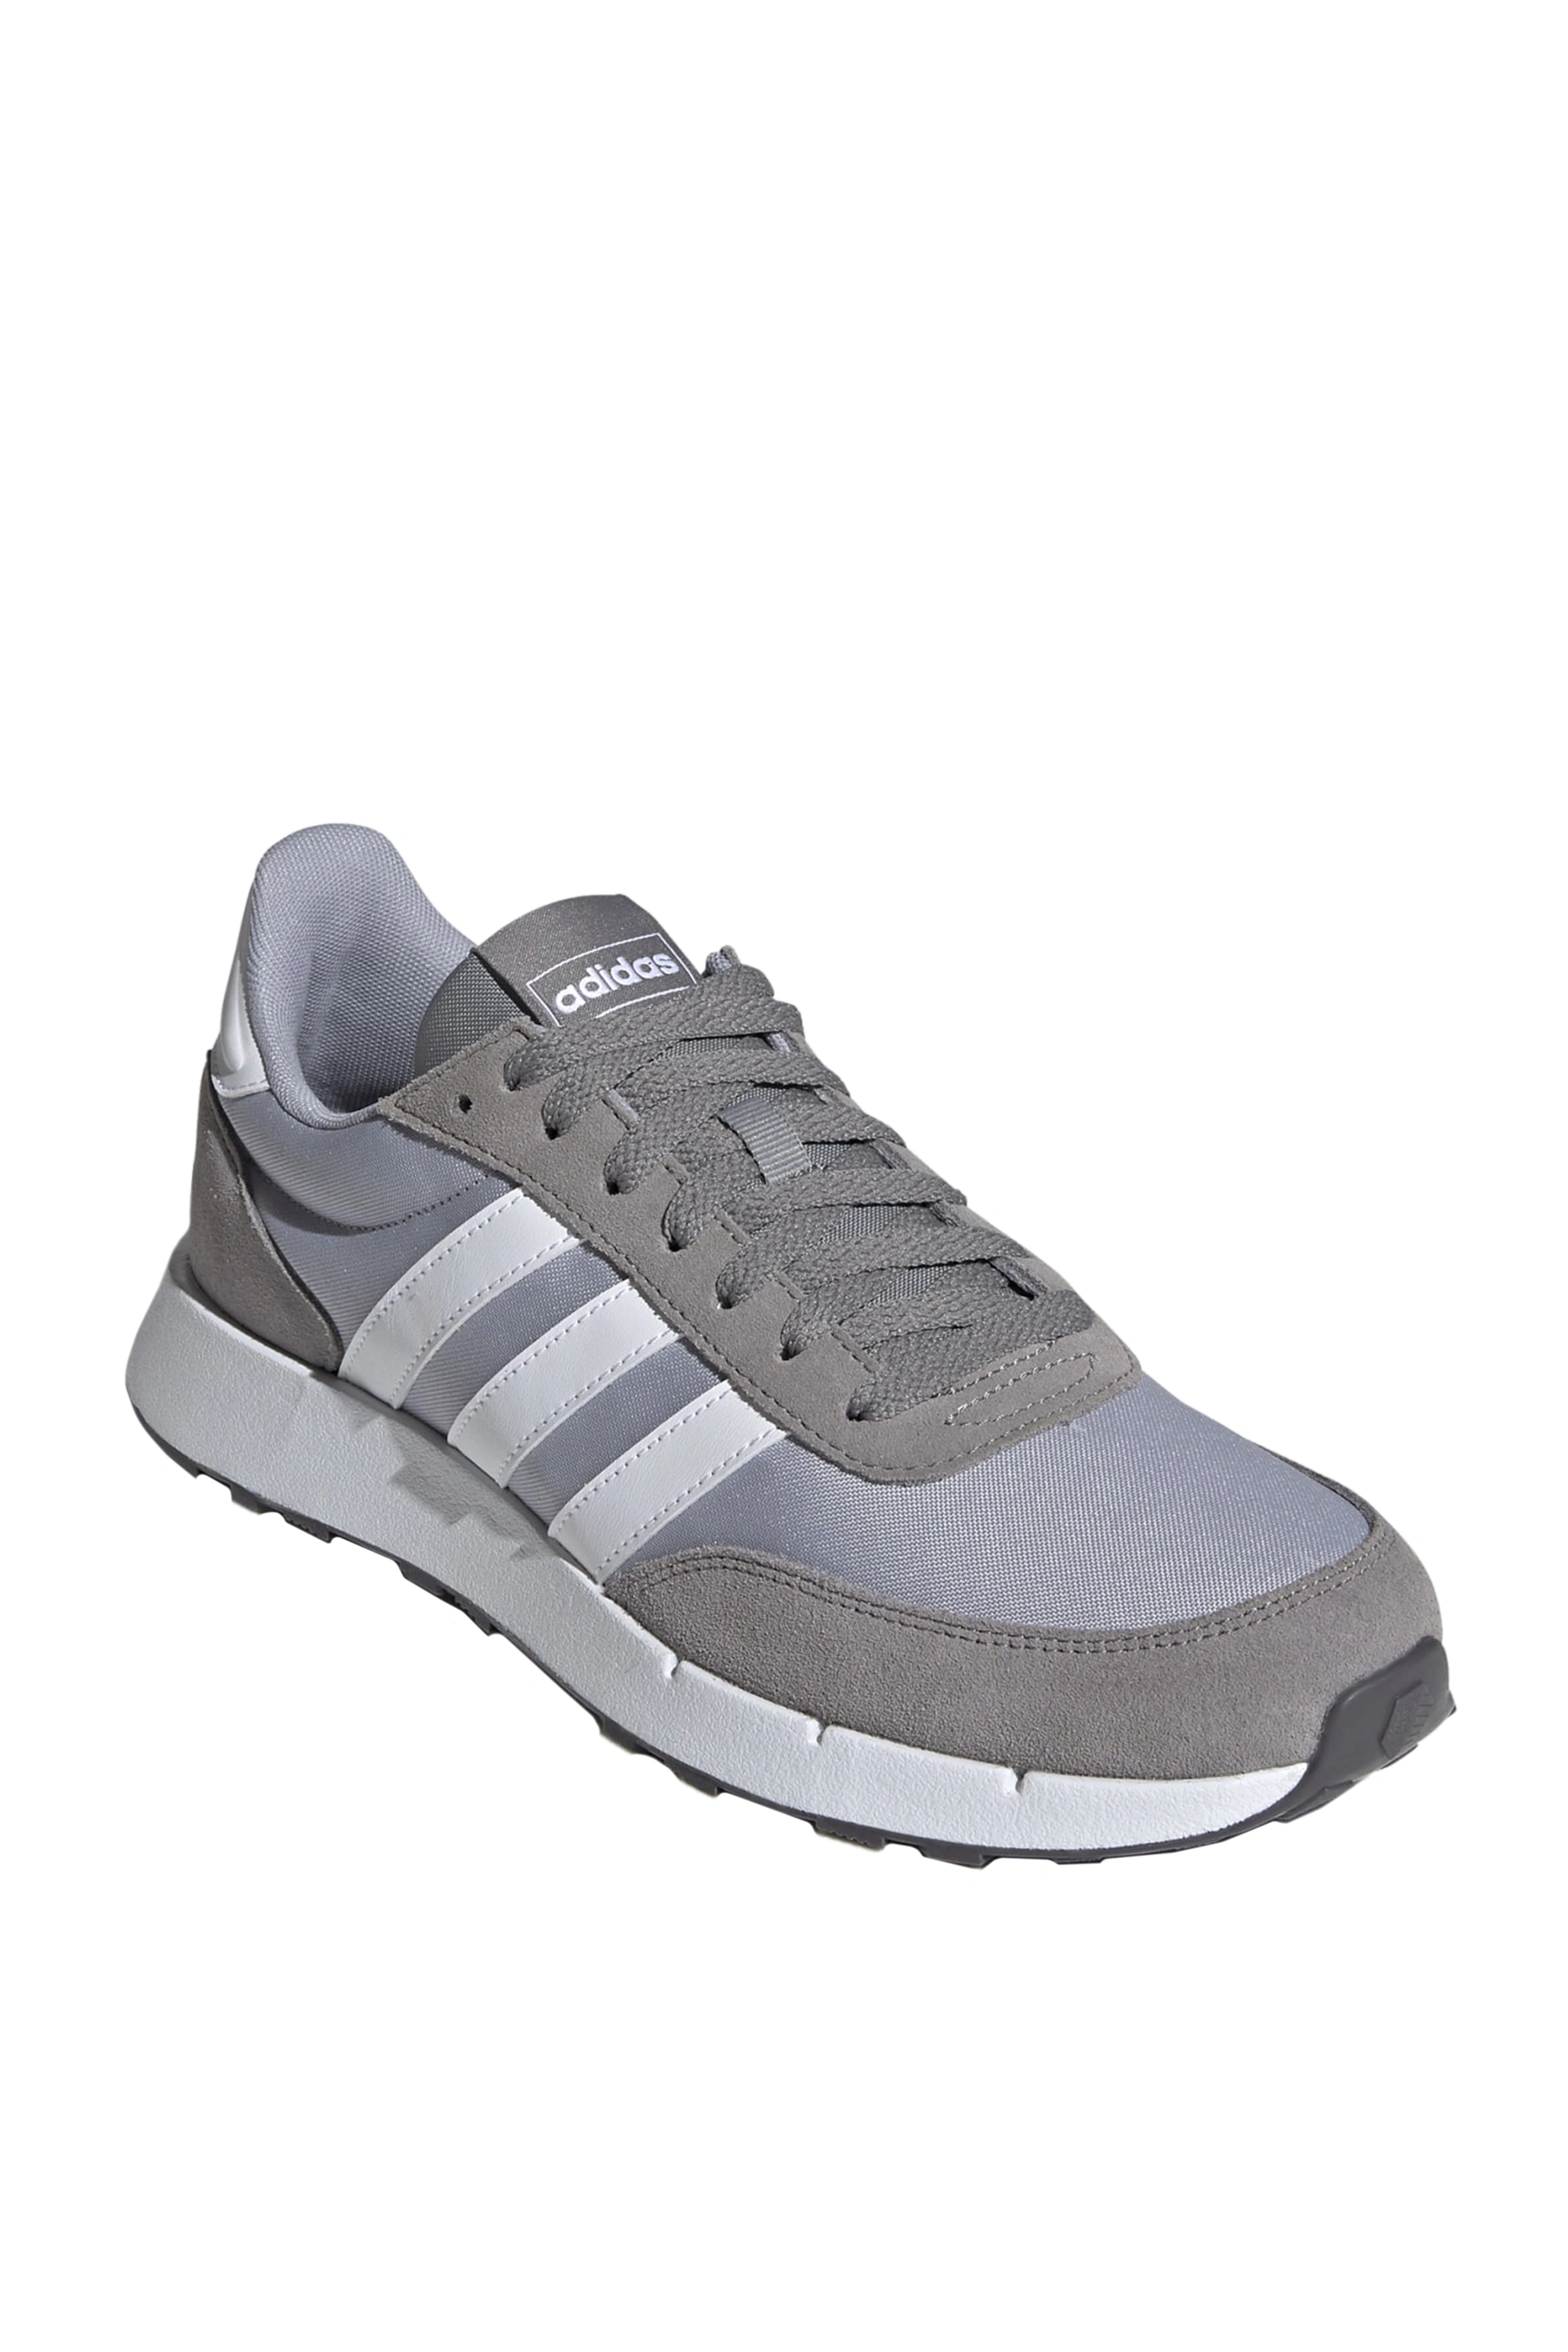 Adidas ❤ мужские кроссовки run 60s 2.0 серый цвет, размер , цена 